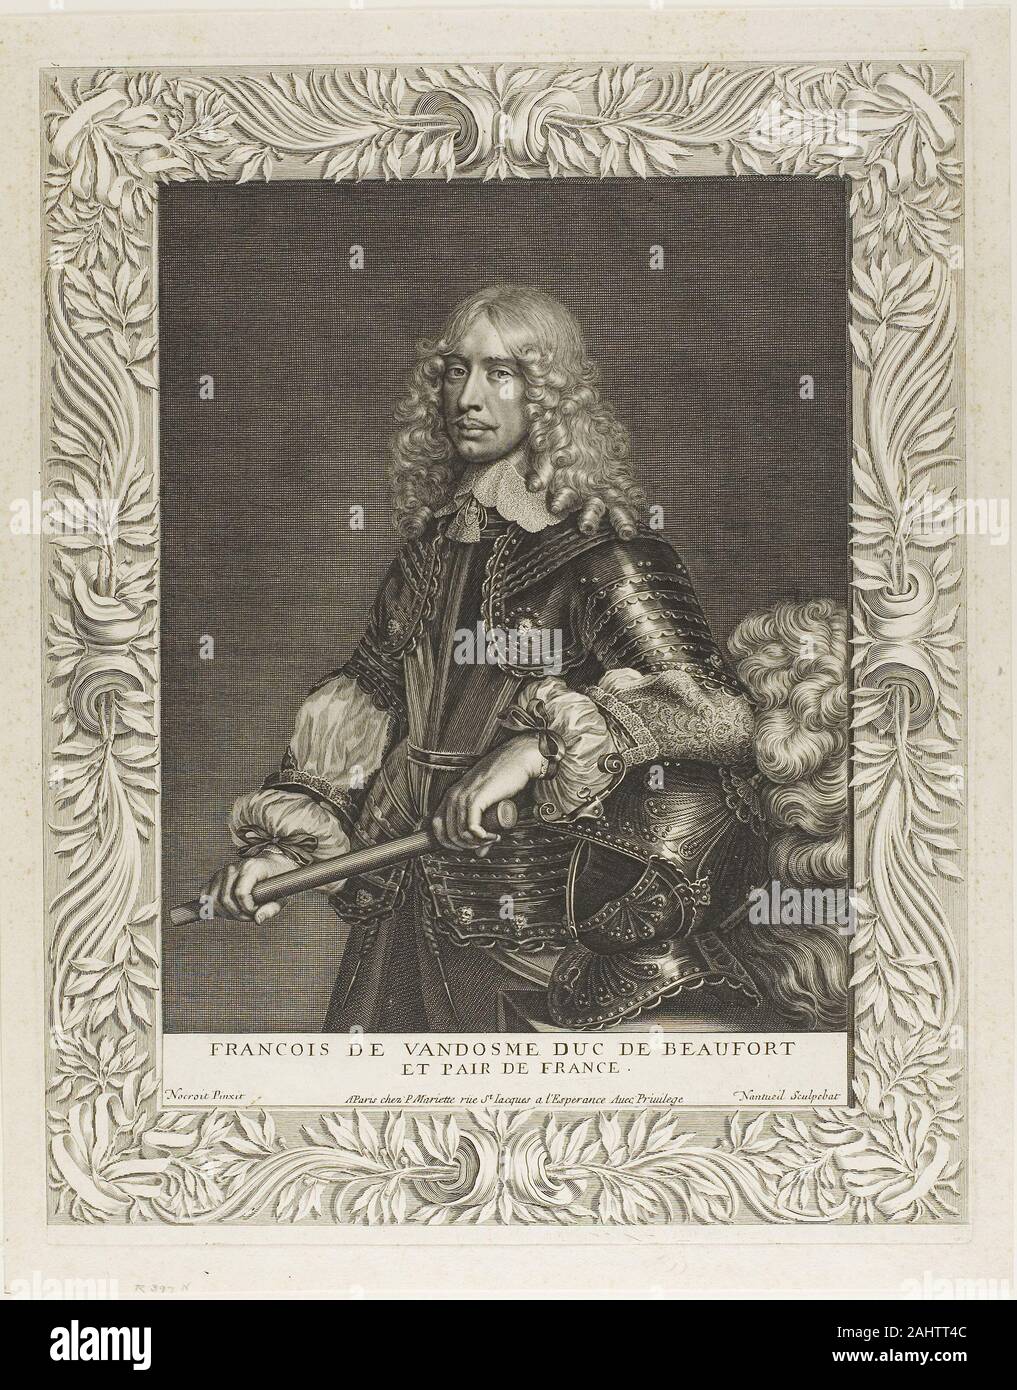 Robert Nanteuil. François de Vendôme, duc de Beaufort. 1643-1653. La France. Gravure sur papier Banque D'Images